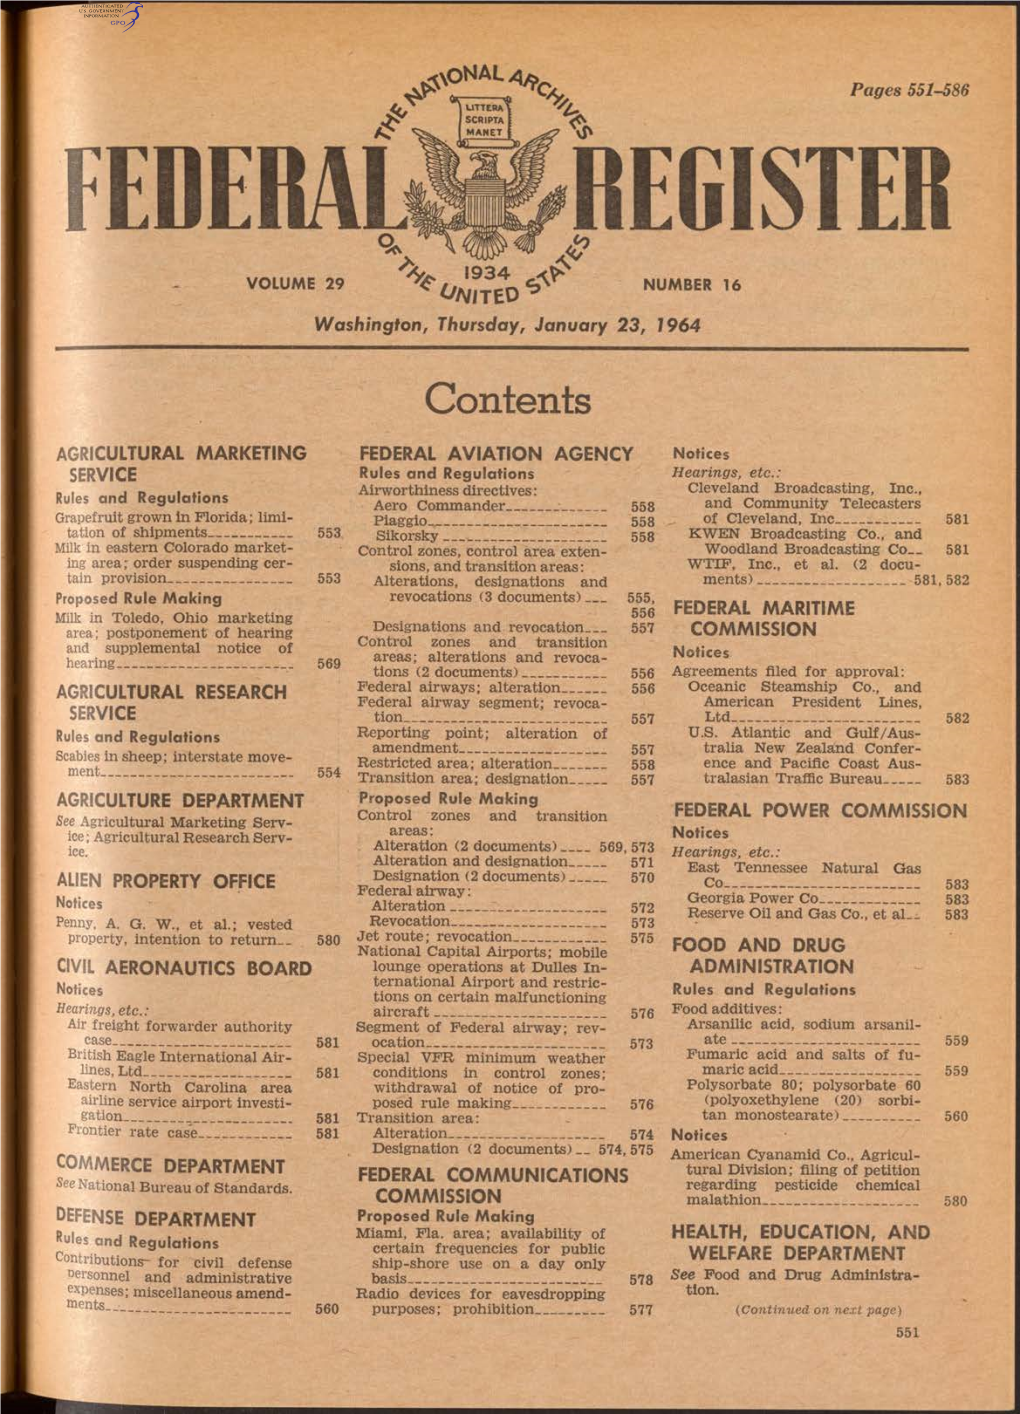 REGISTER 1934 VOLUME 29 ^ ¿Y NUMBER 16